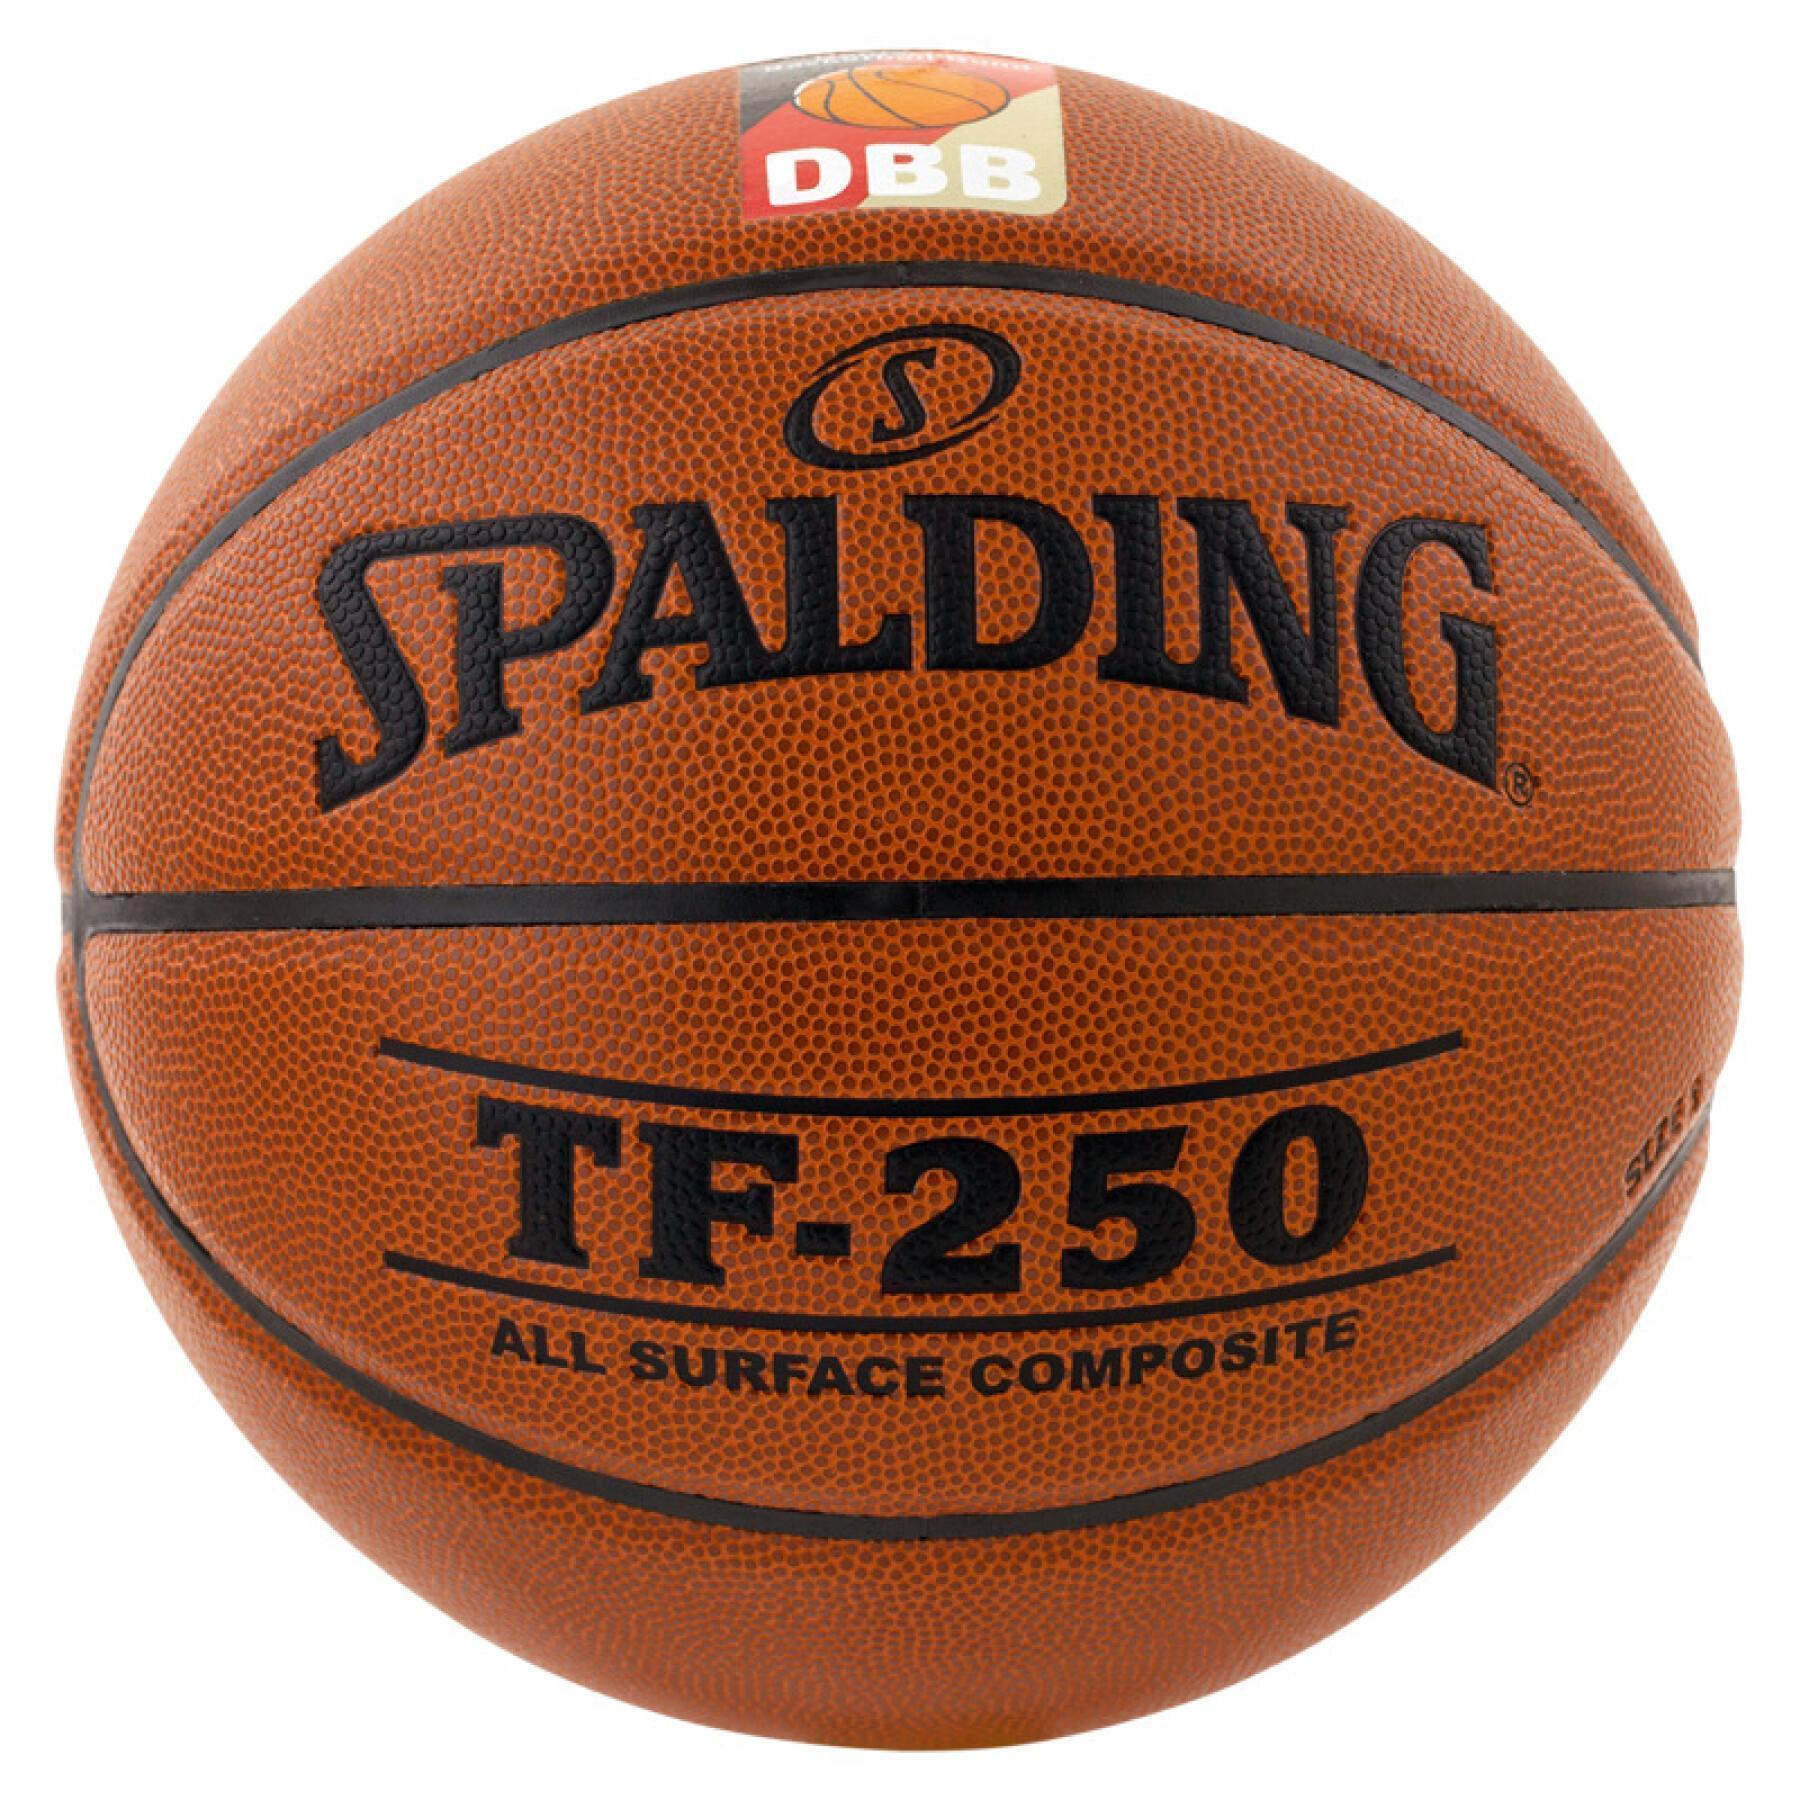 Ballong Spalding DBB Tf250 (74-594z)